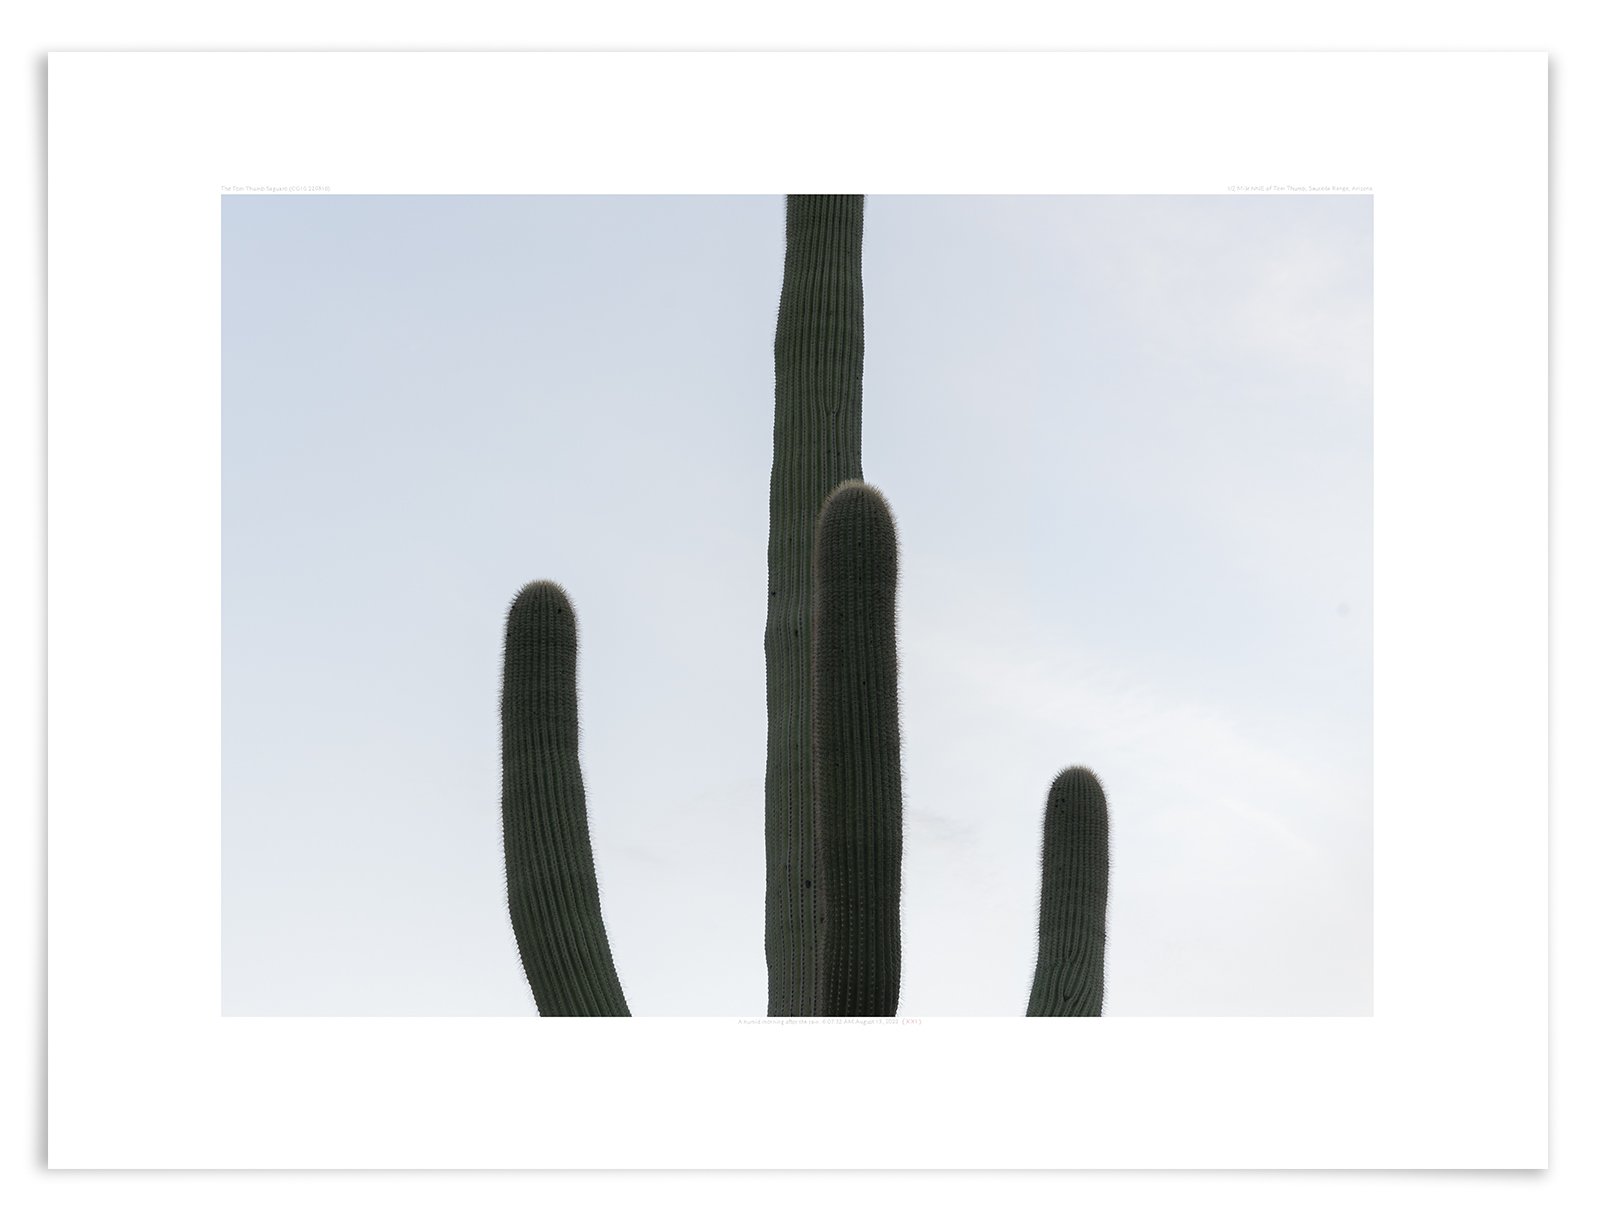   The Tom Thumb Saguaro (CG10 220816)   24 x 31 in (61 x 79 cm)               